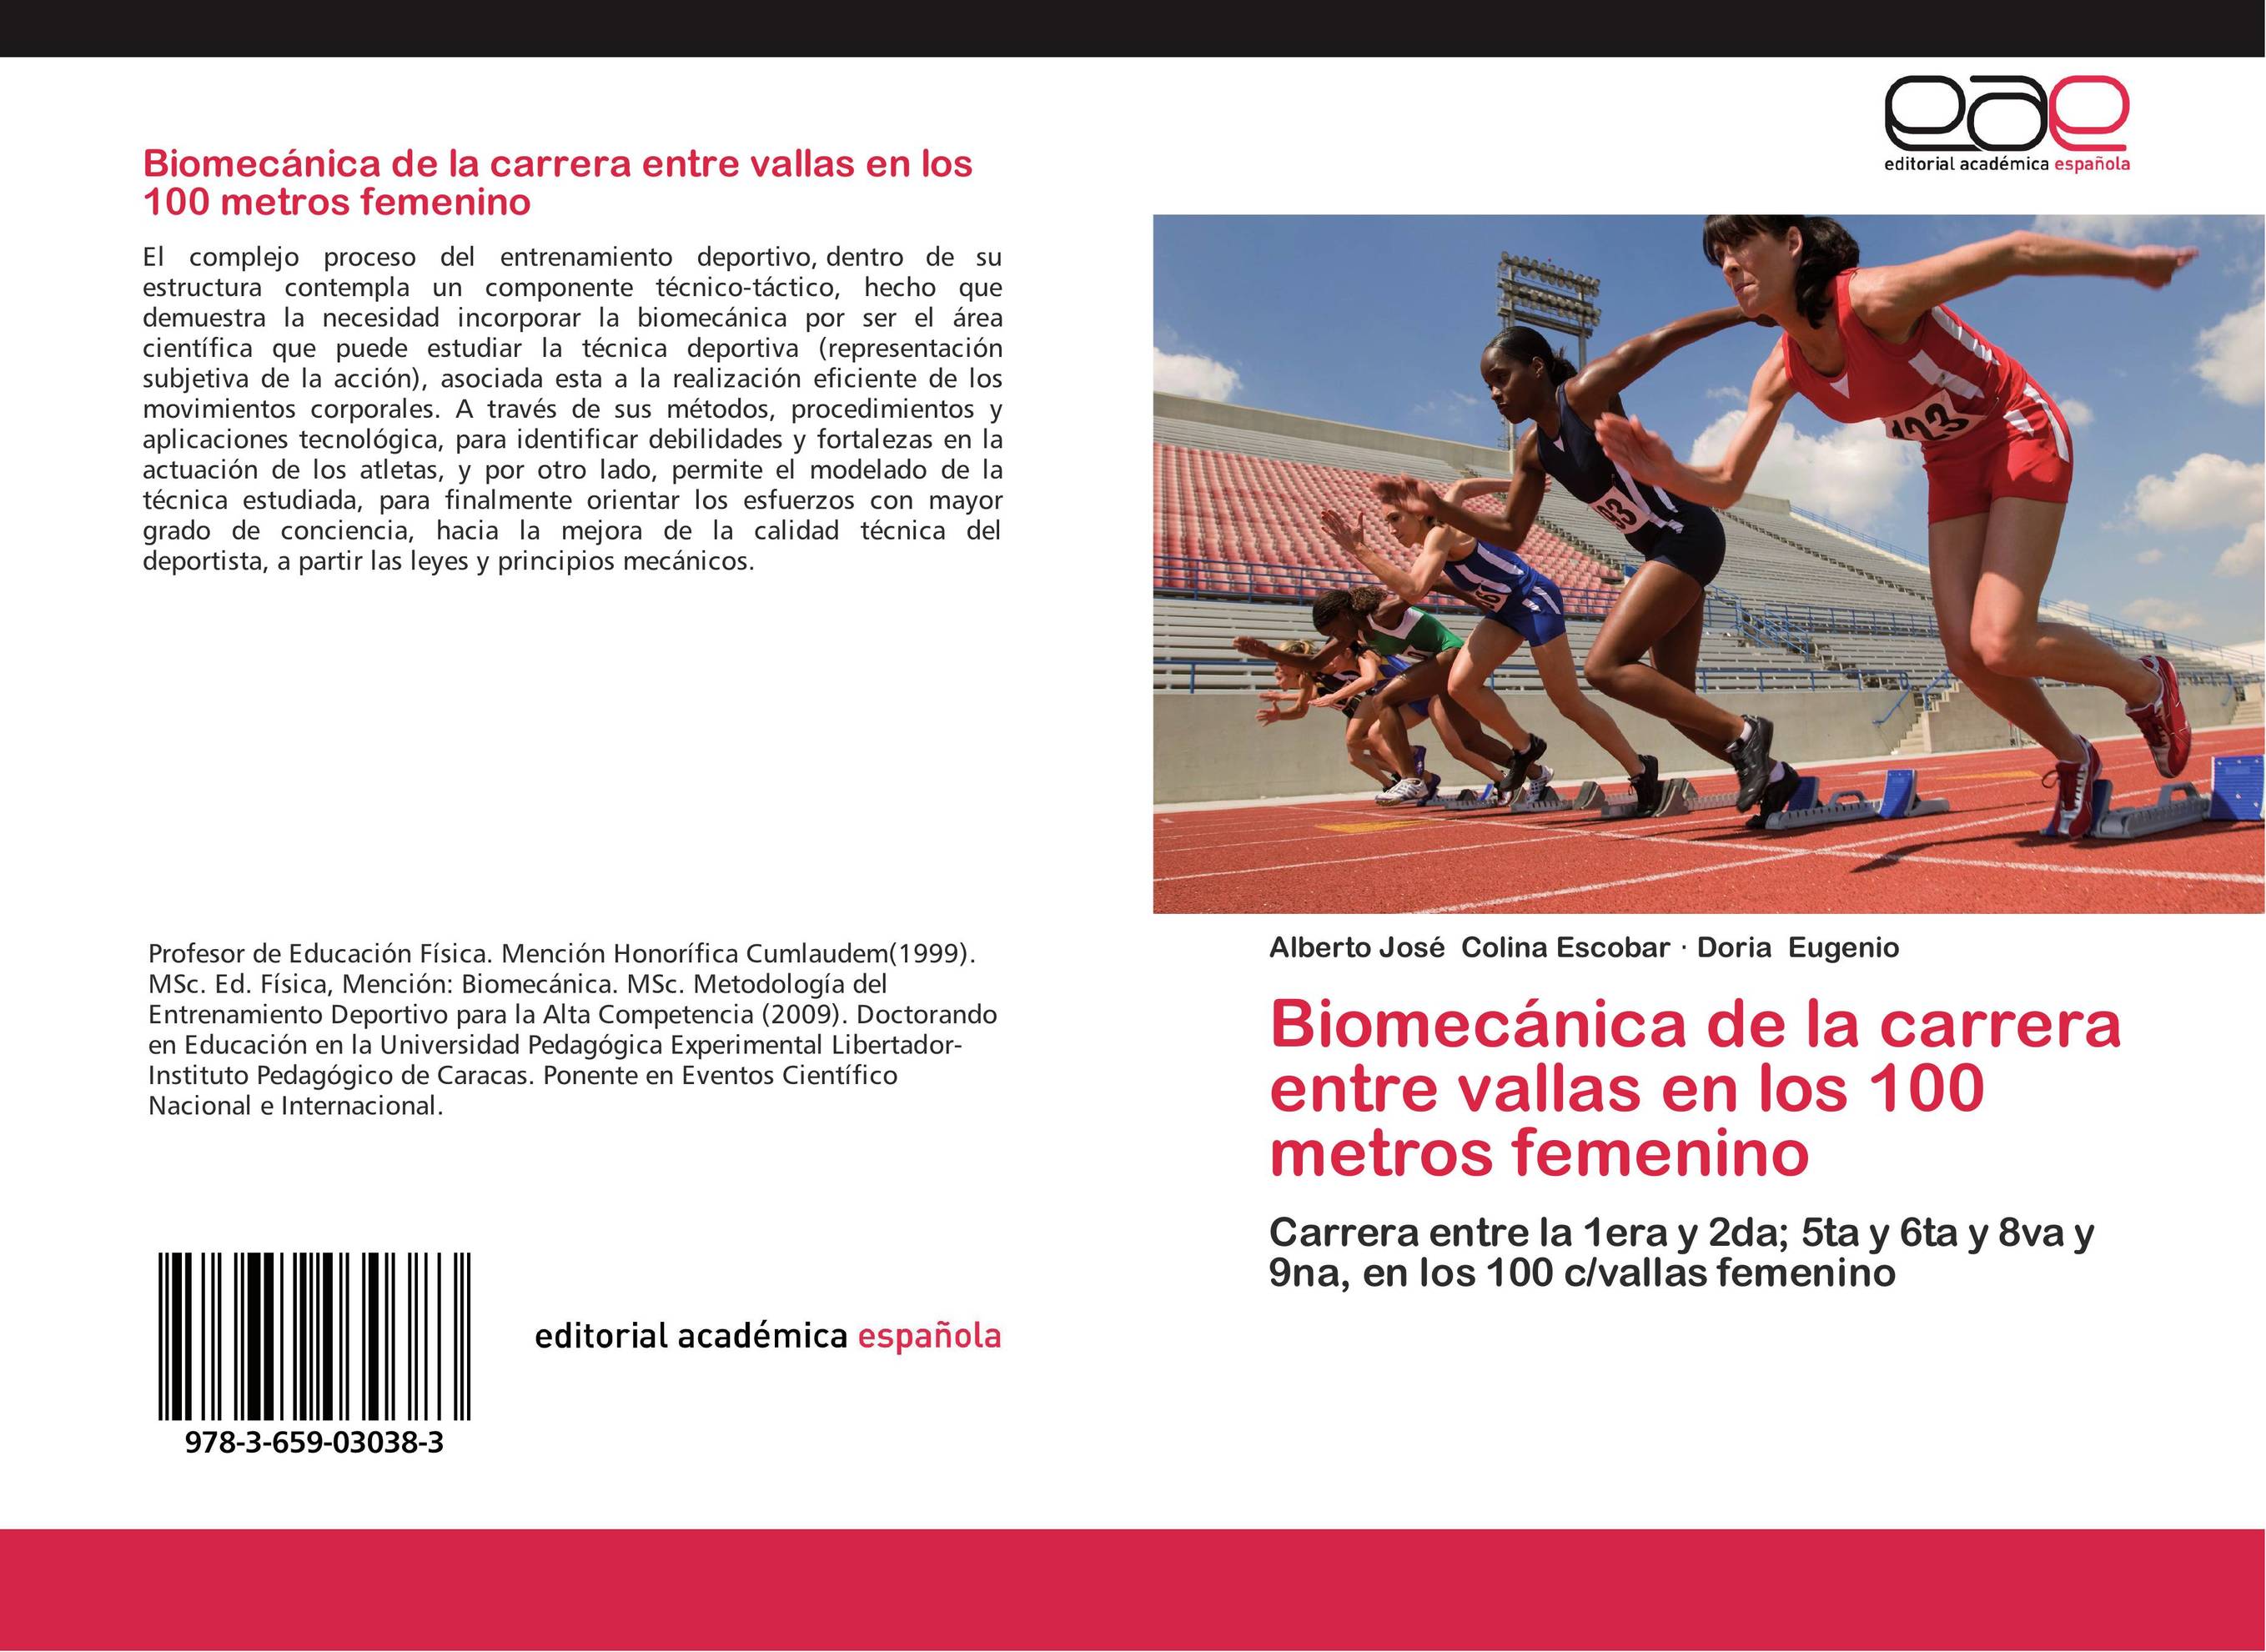 Biomecánica de la carrera entre vallas en los 100 metros femenino